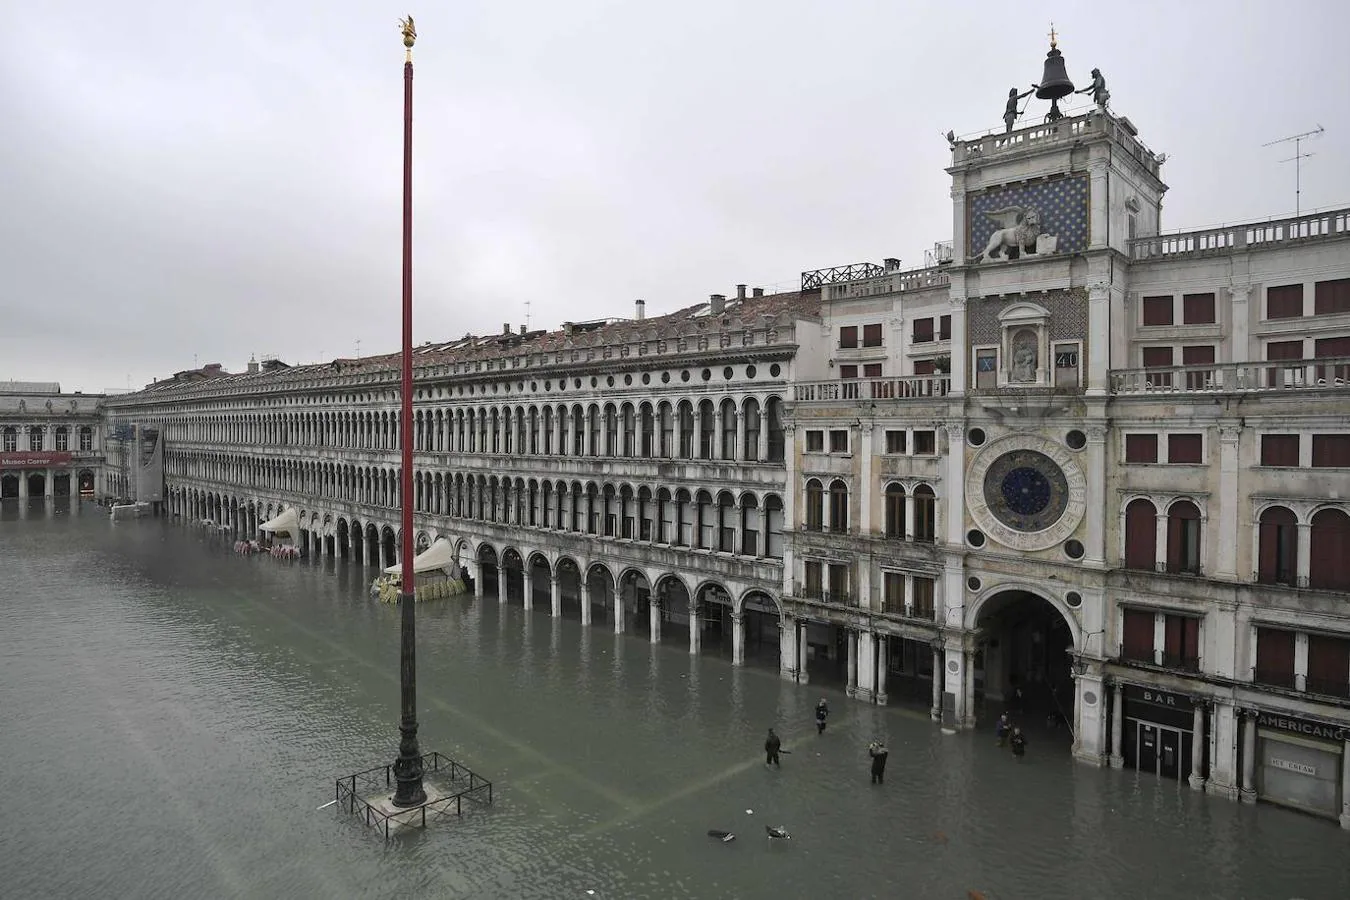 Una vista general muestra el Palacio Ducal (i) con vistas a la Plaza de San Marcos inundada, la estatua de bronce alada del León de San Marcos, las góndolas y la laguna veneciana.